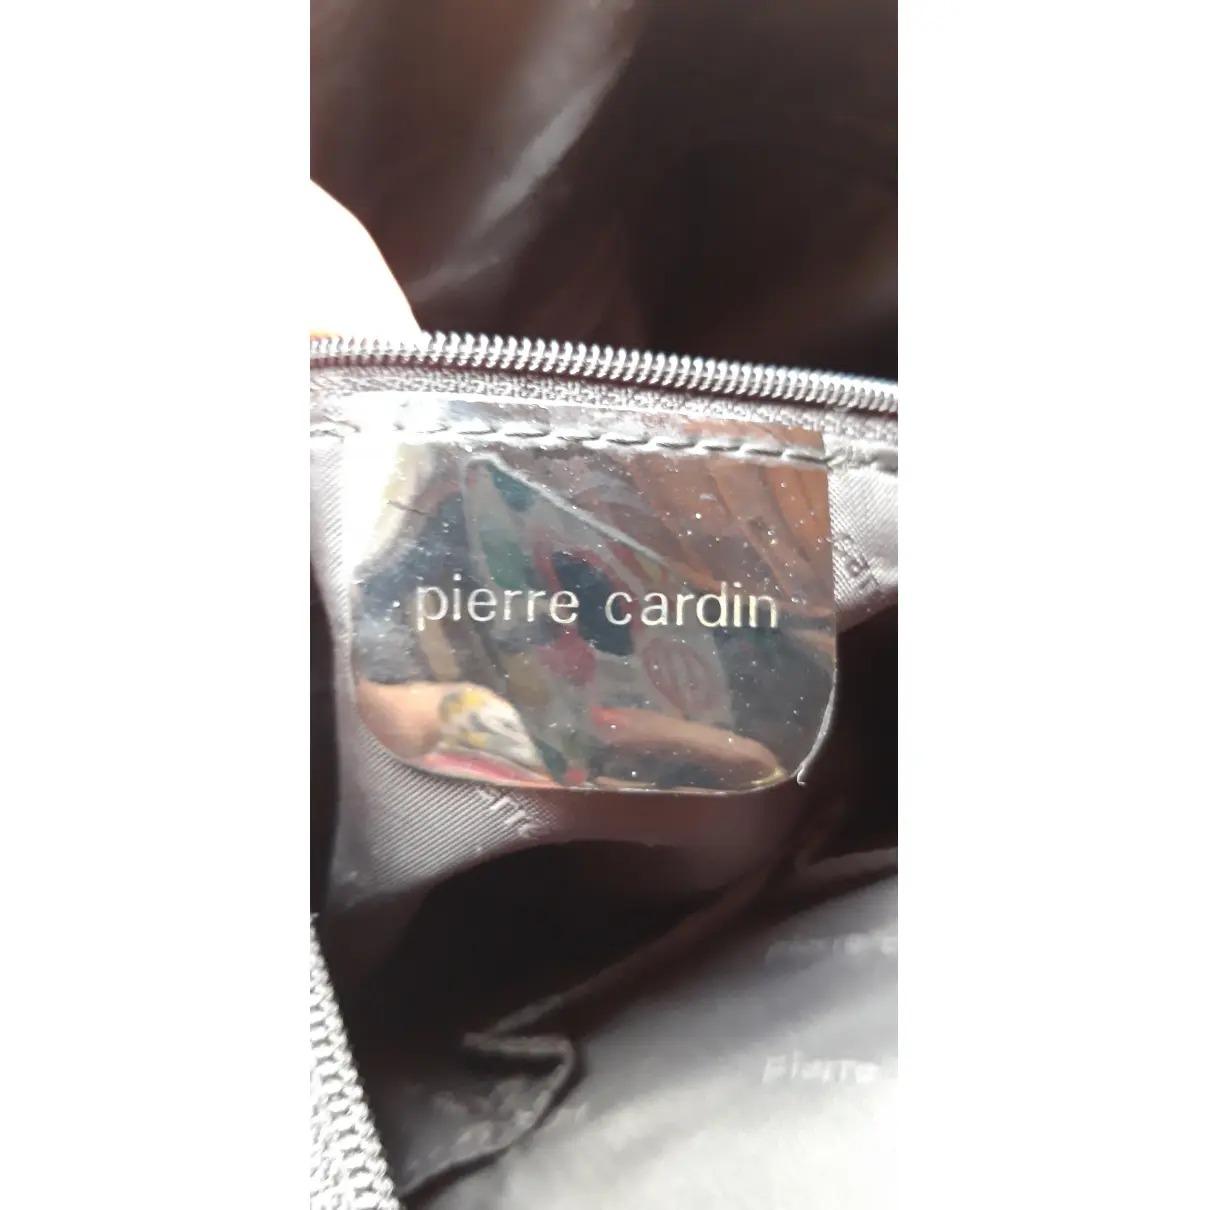 Luxury Pierre Cardin Handbags Women - Vintage